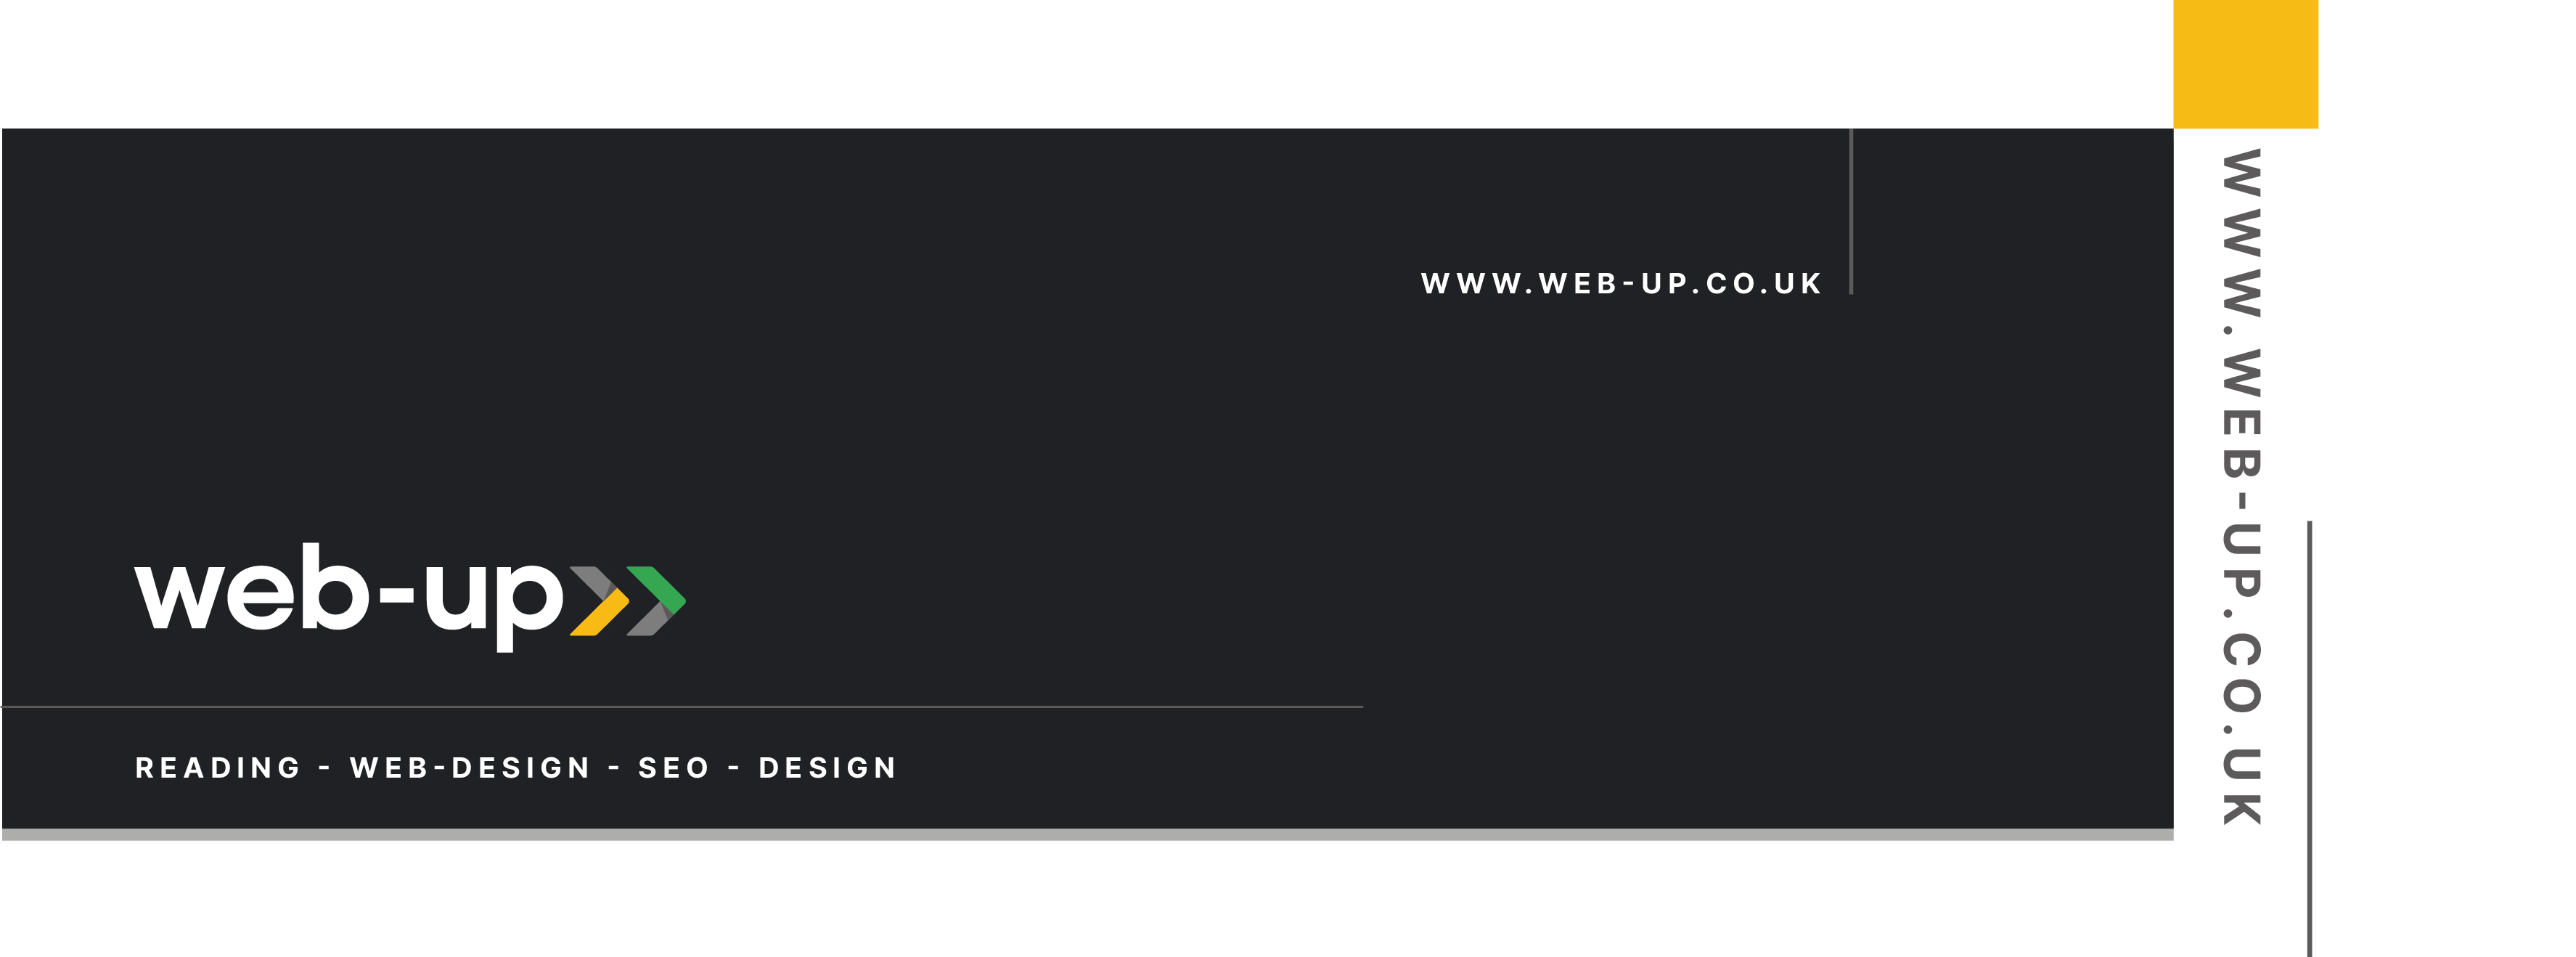 Main image for Web-up Strony Internetowe UK / Web-design